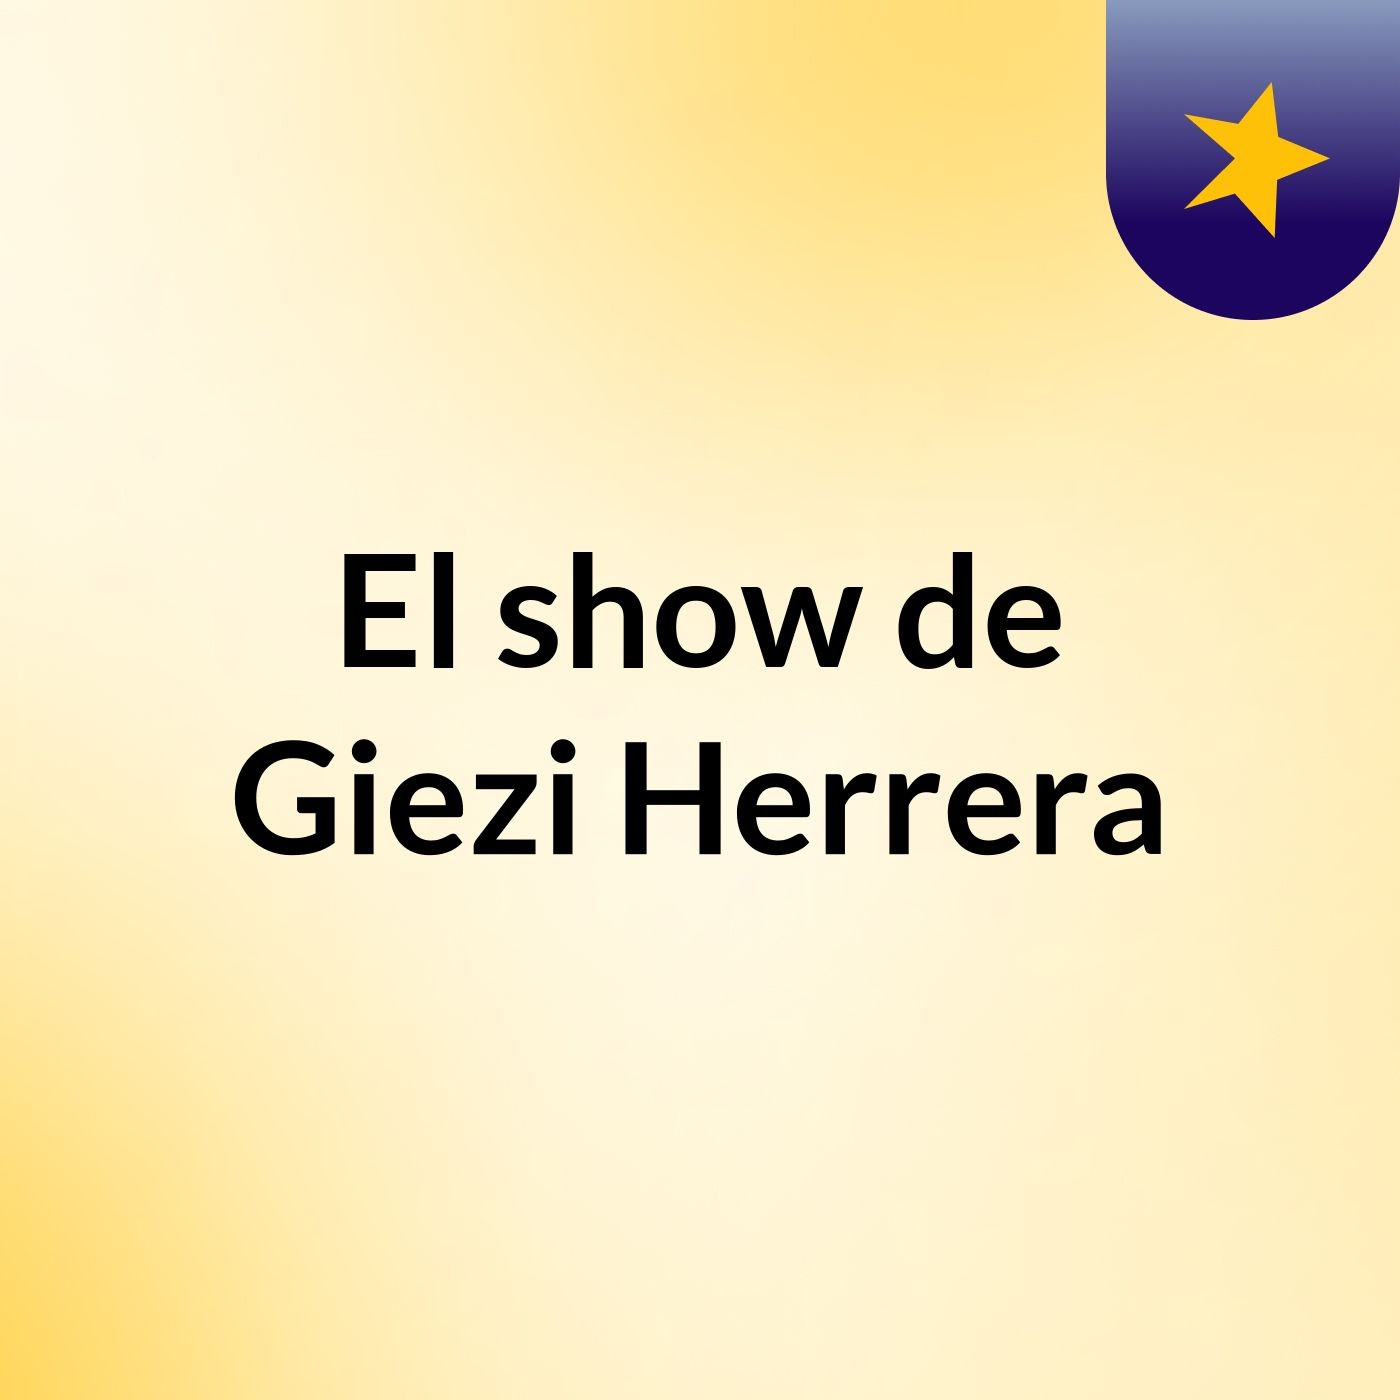 El show de Giezi Herrera